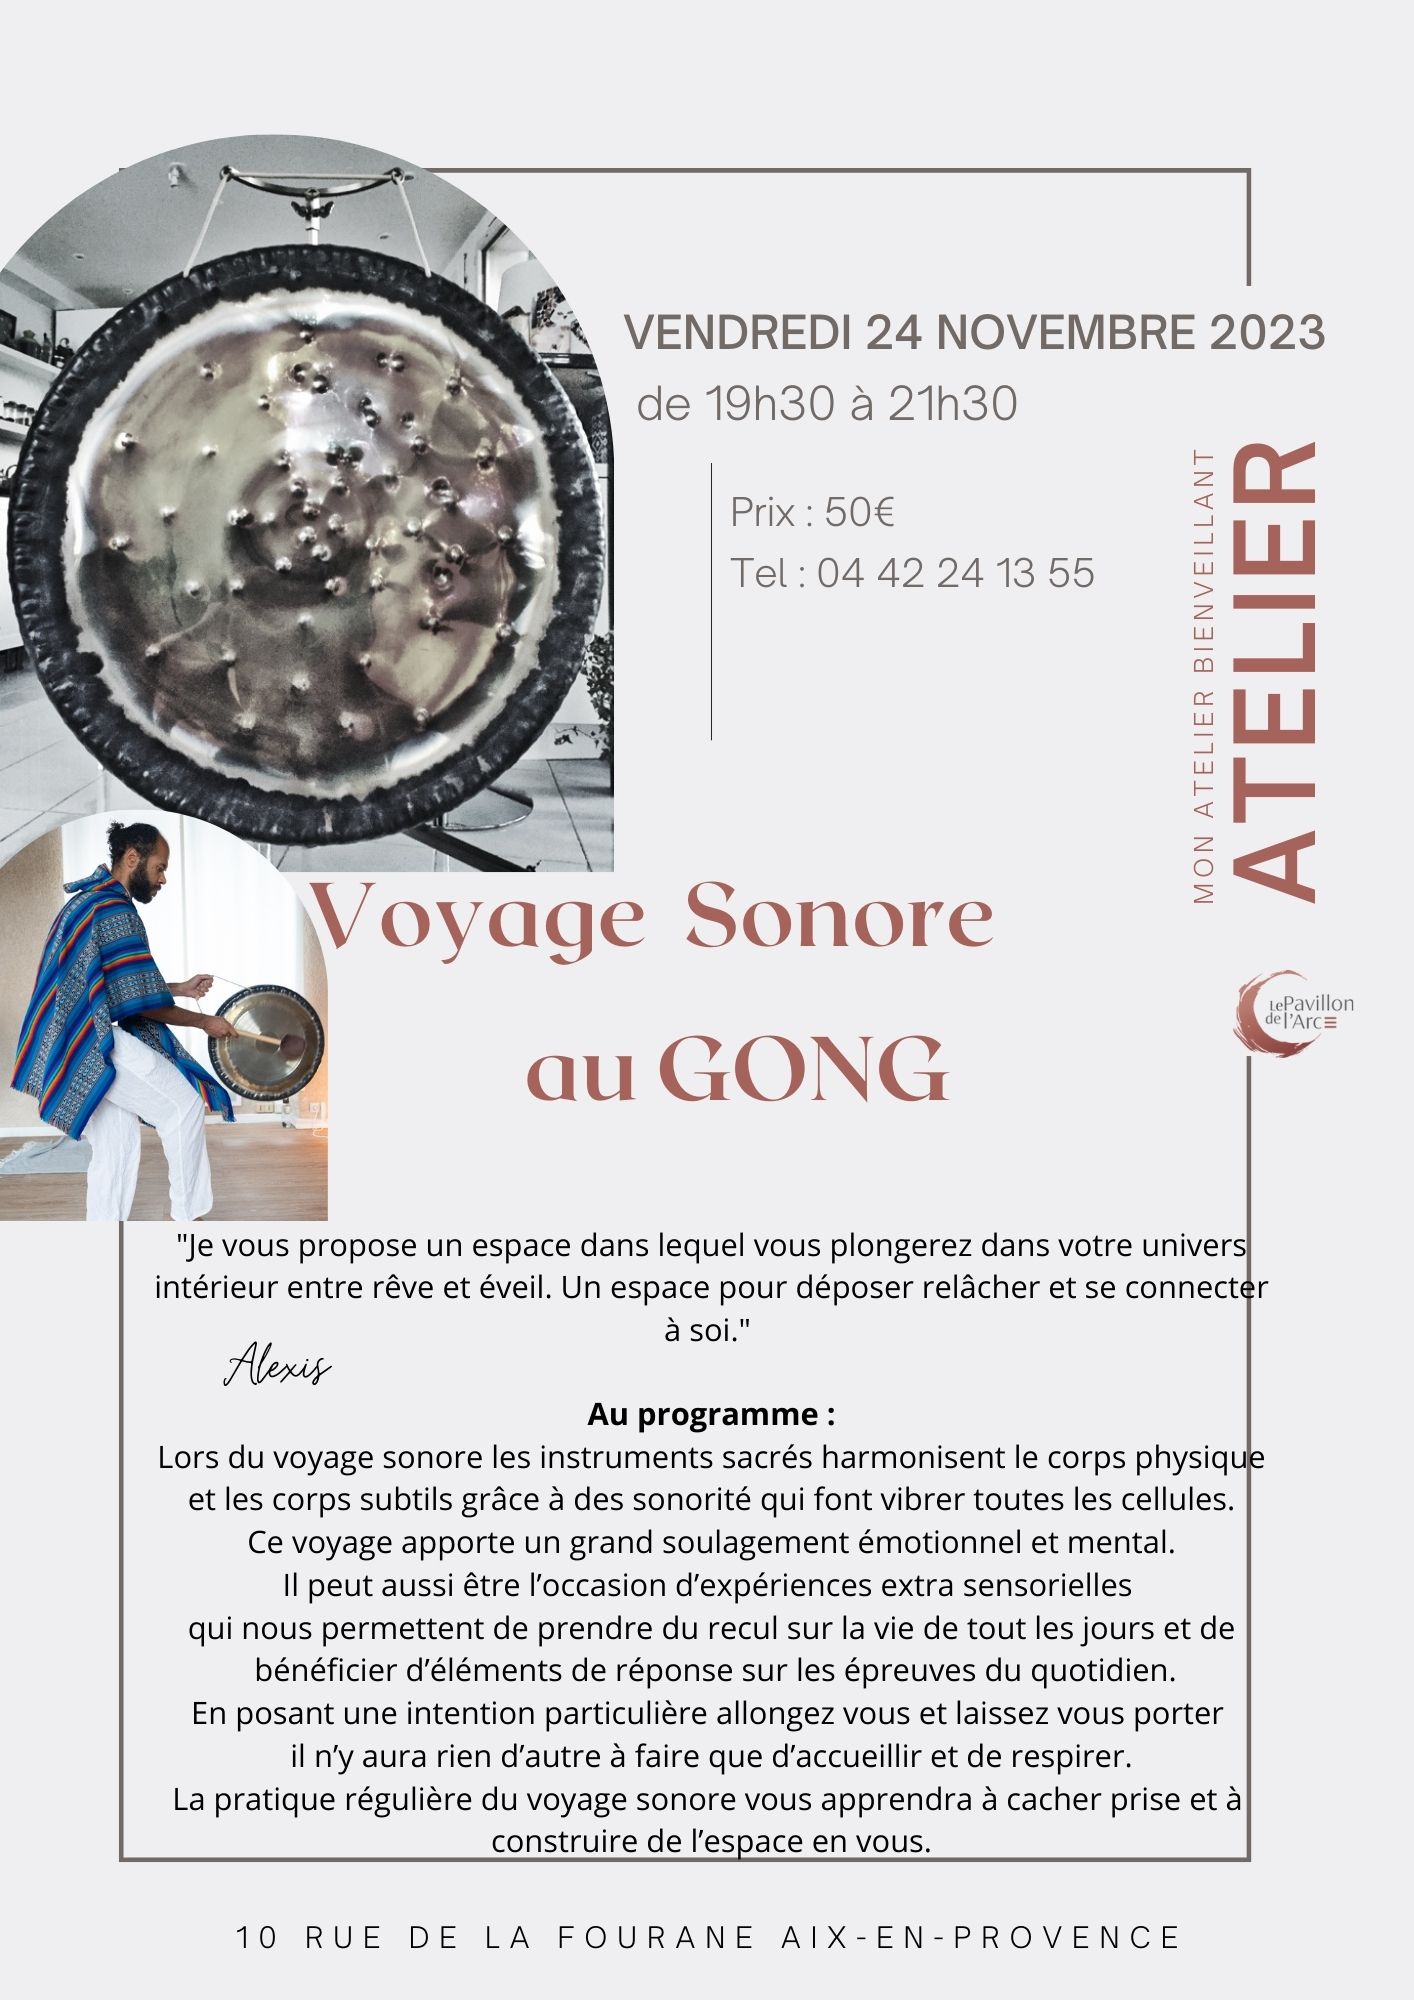 Modif Voyage Sonore Alexis (2)